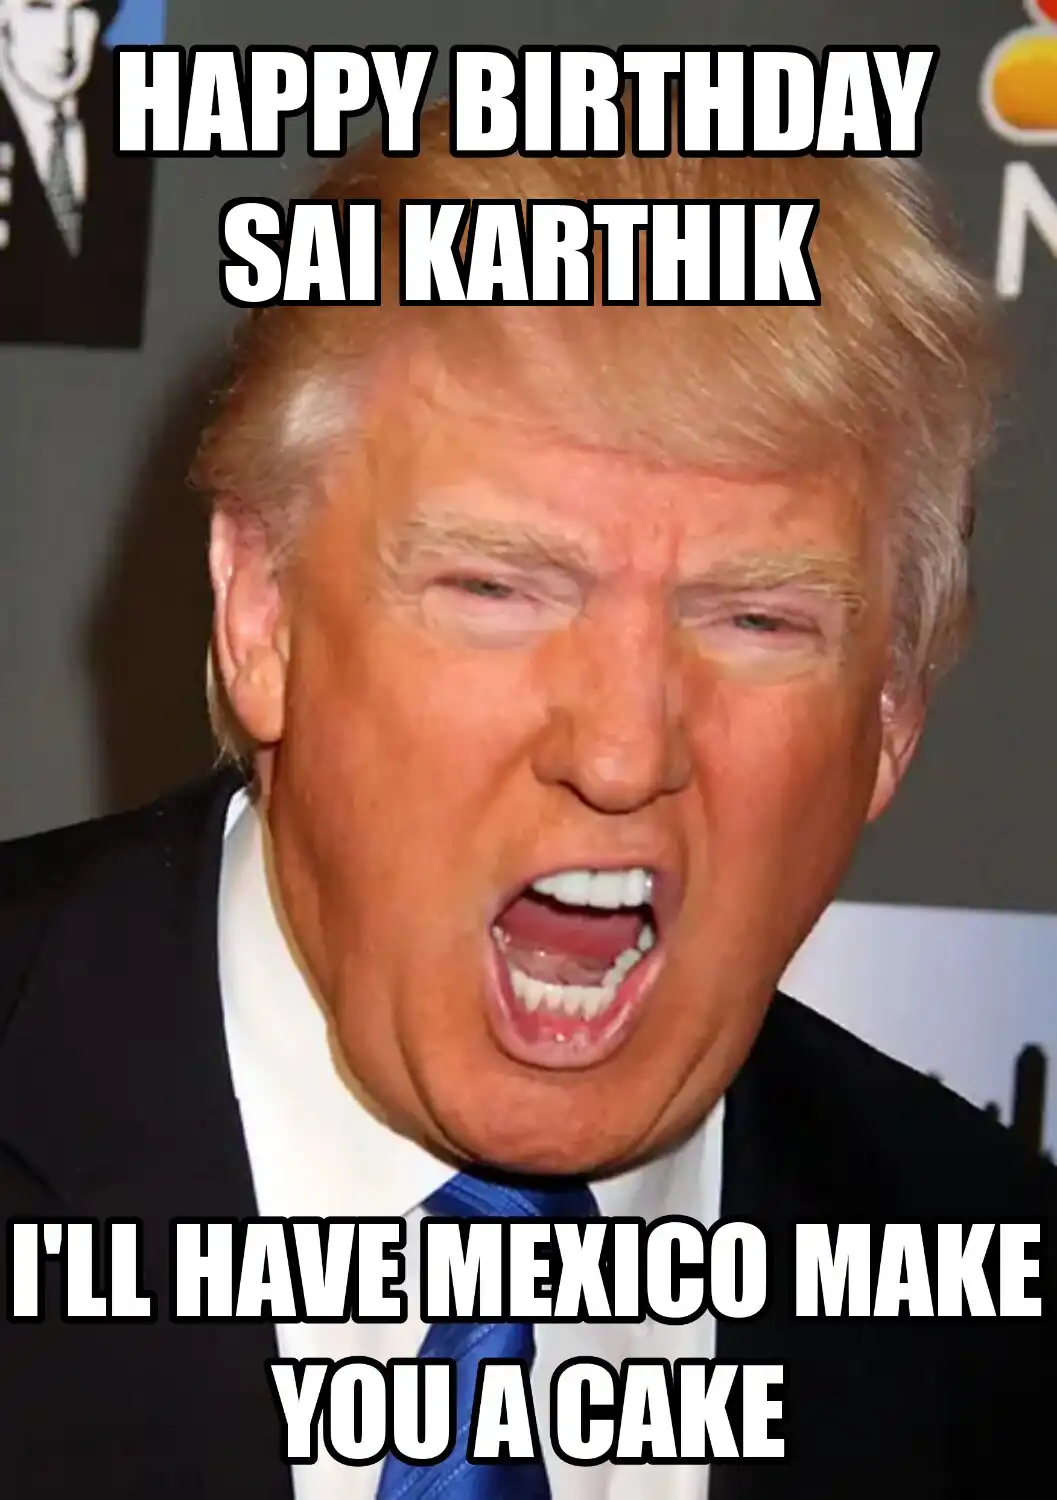 Happy Birthday Sai Karthik Mexico Make You A Cake Meme